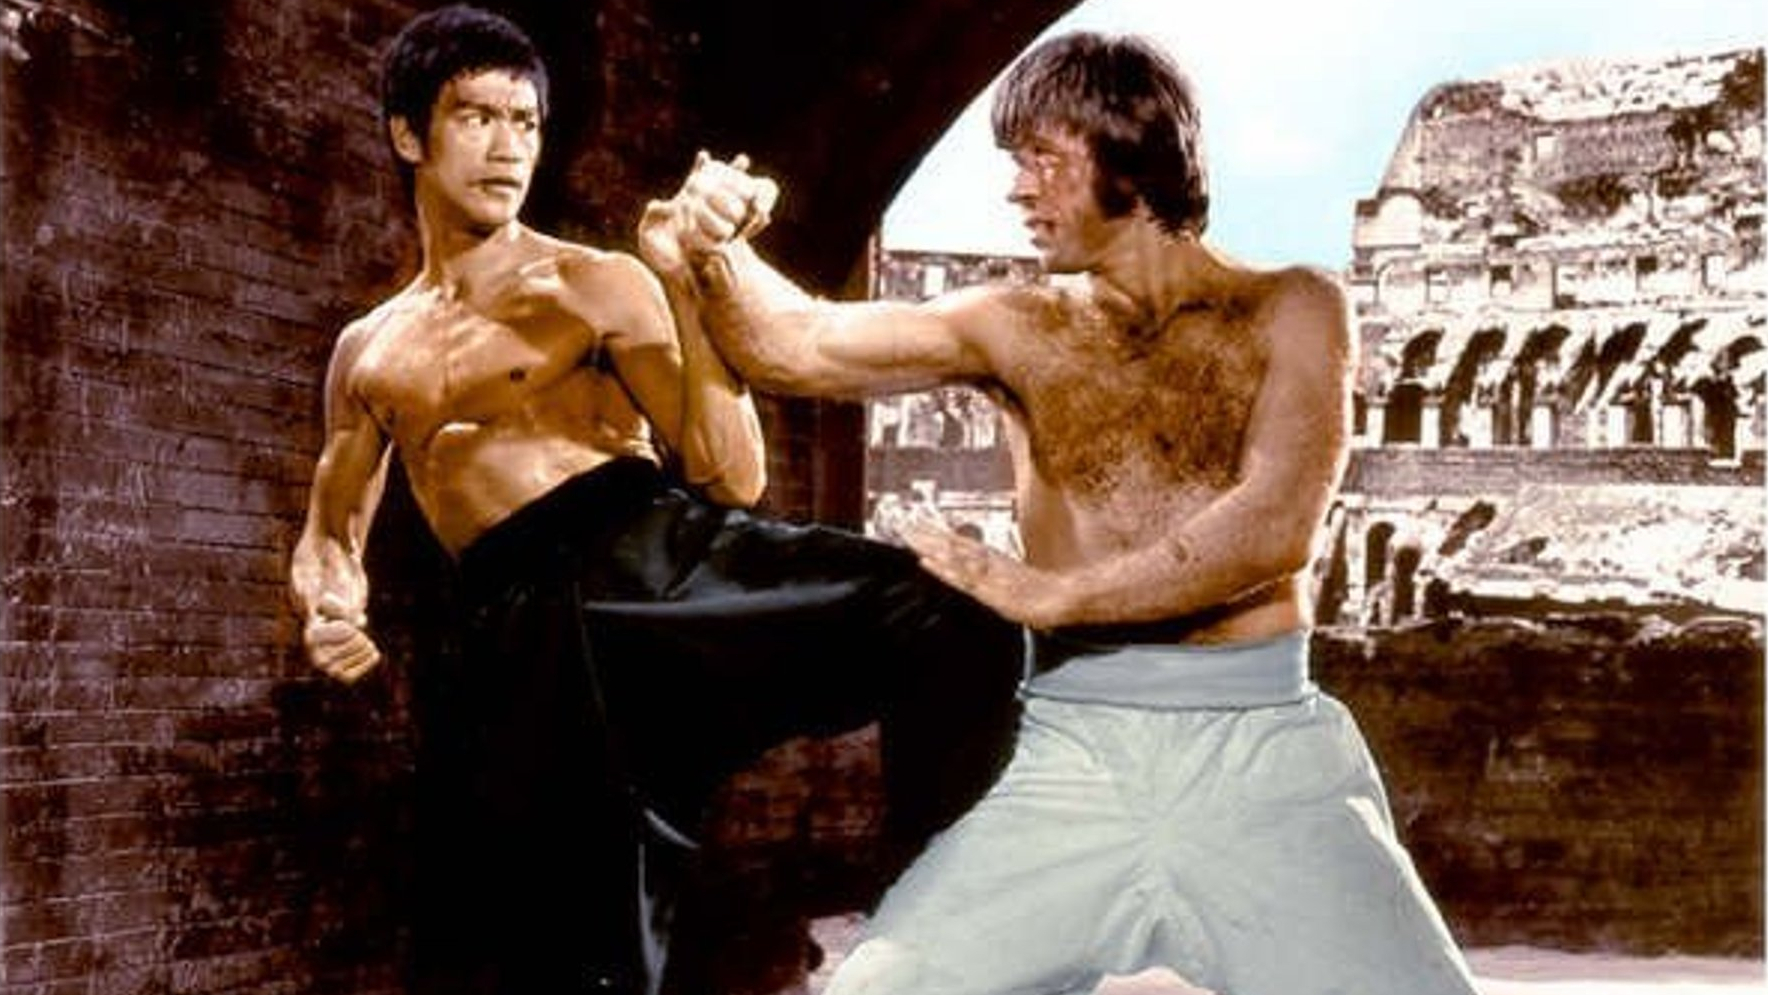 Le combat mythique entre Bruce Lee et Chuck Norris